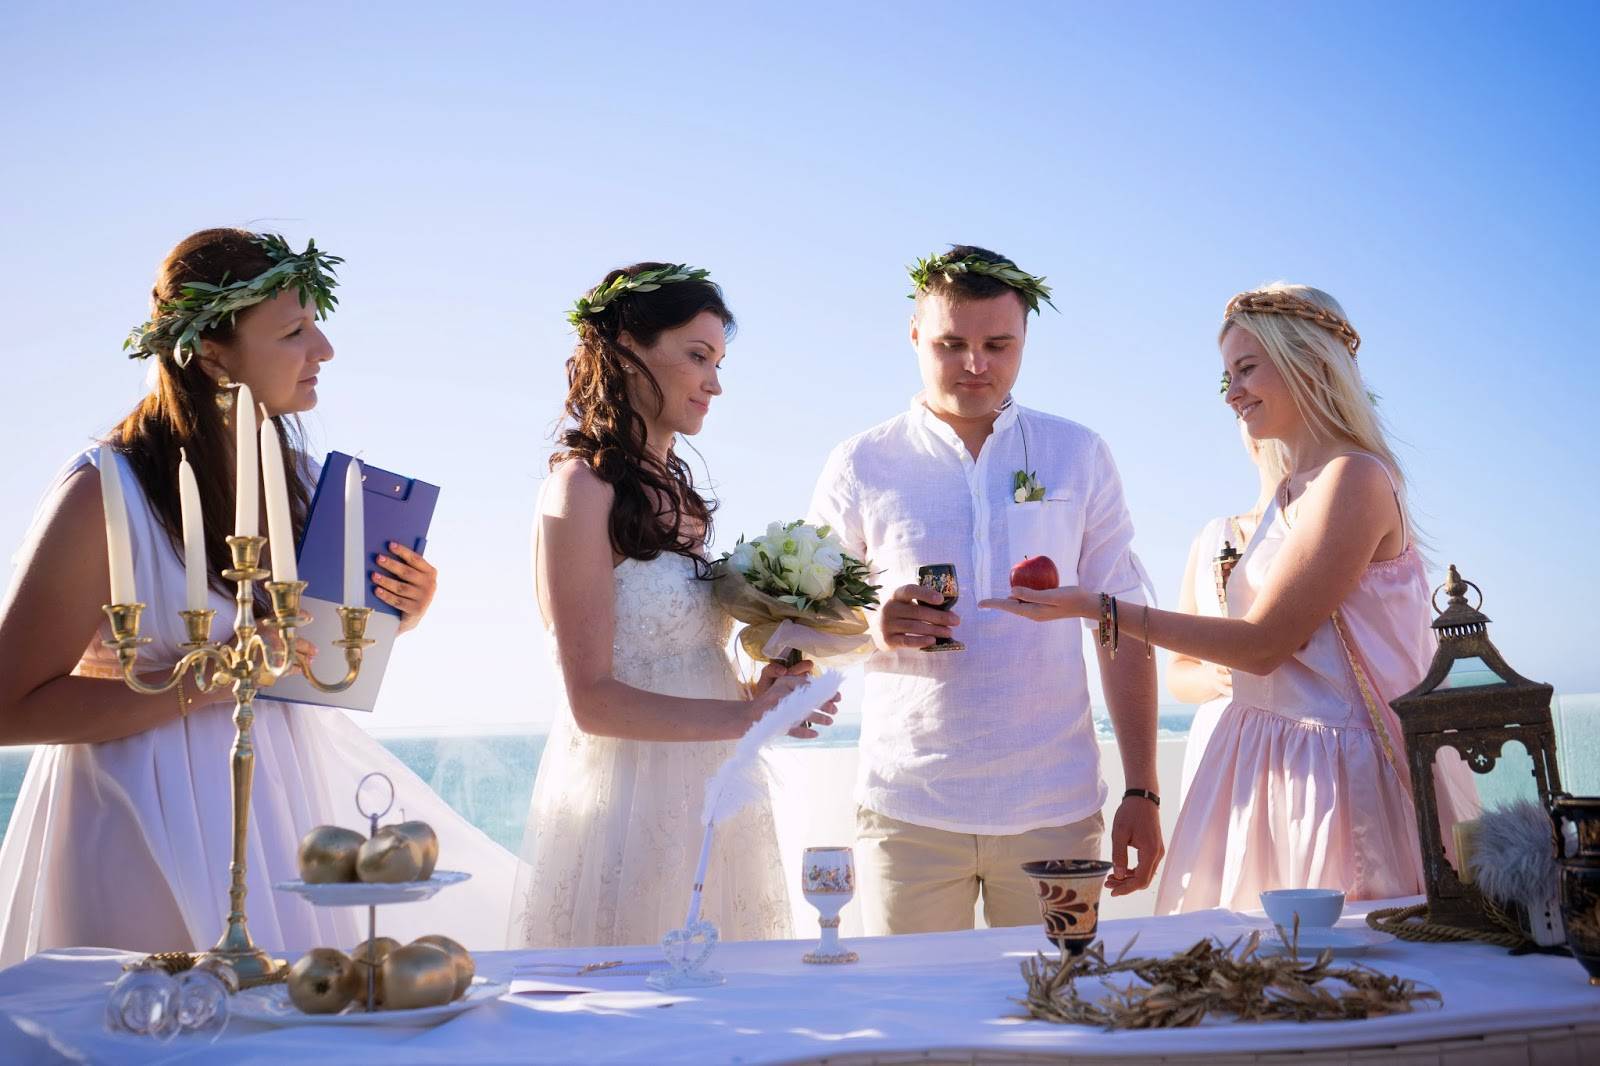 Греческая свадьба - традиции и последовательность обрядов